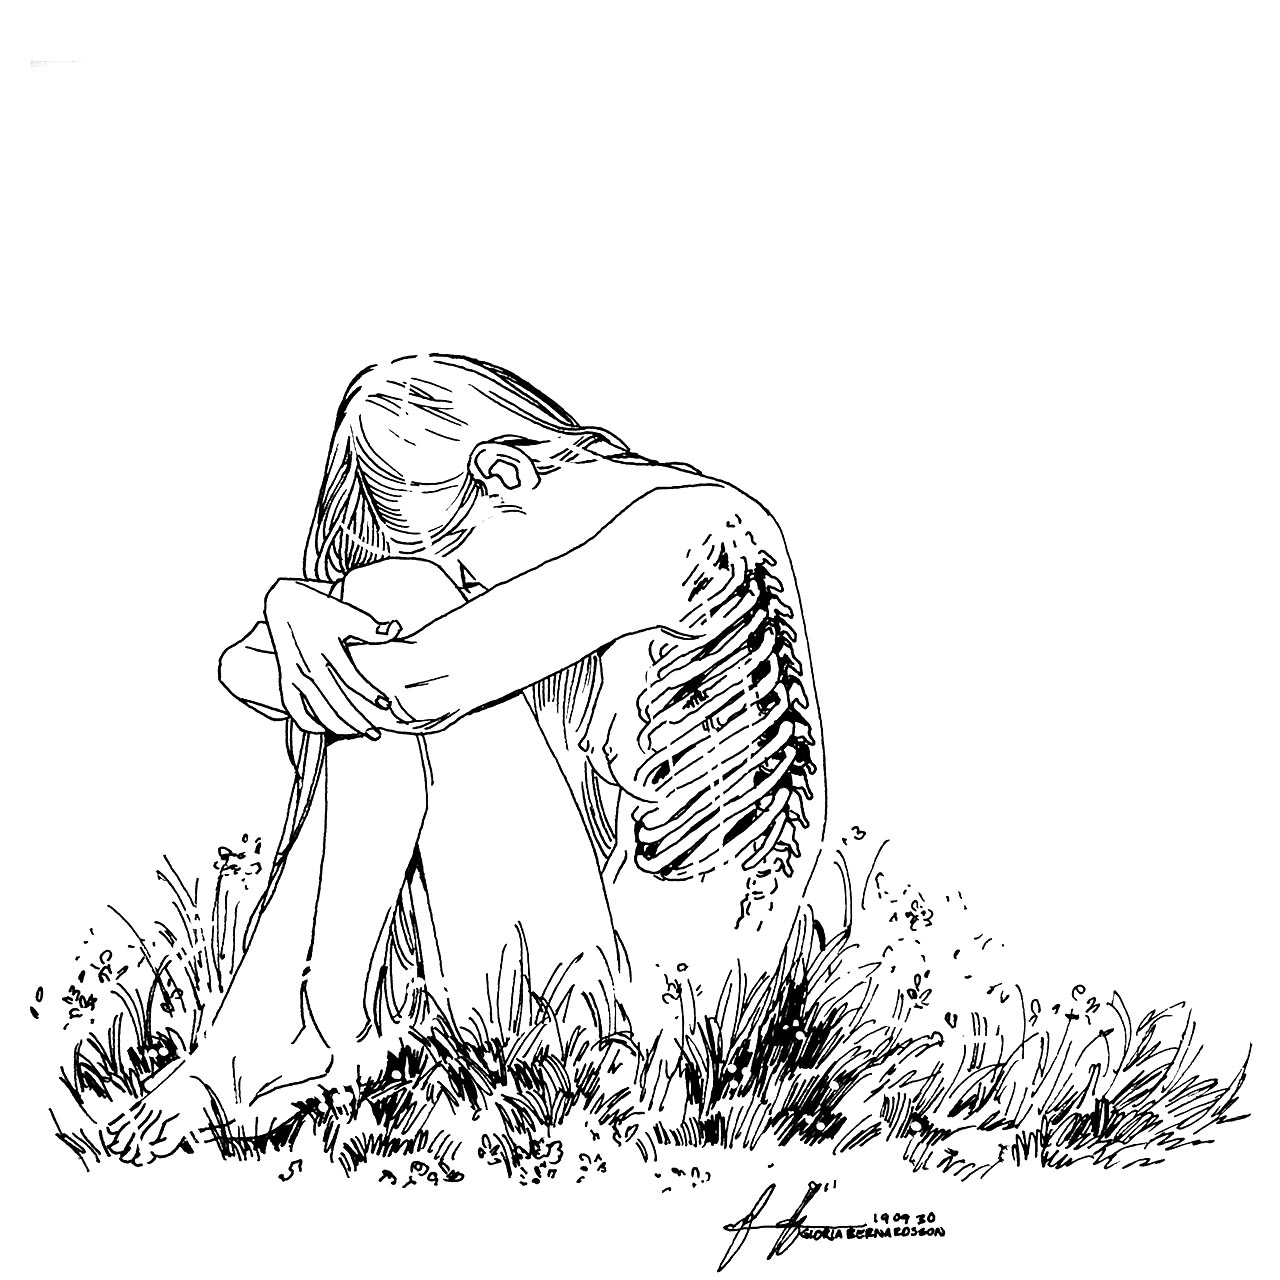 Drawing of girl sitting in grass looking down at ribs in see trough chest Illustration av kvinna som sitter i gräs som ser ner på sina revben genom genomskinlig hud